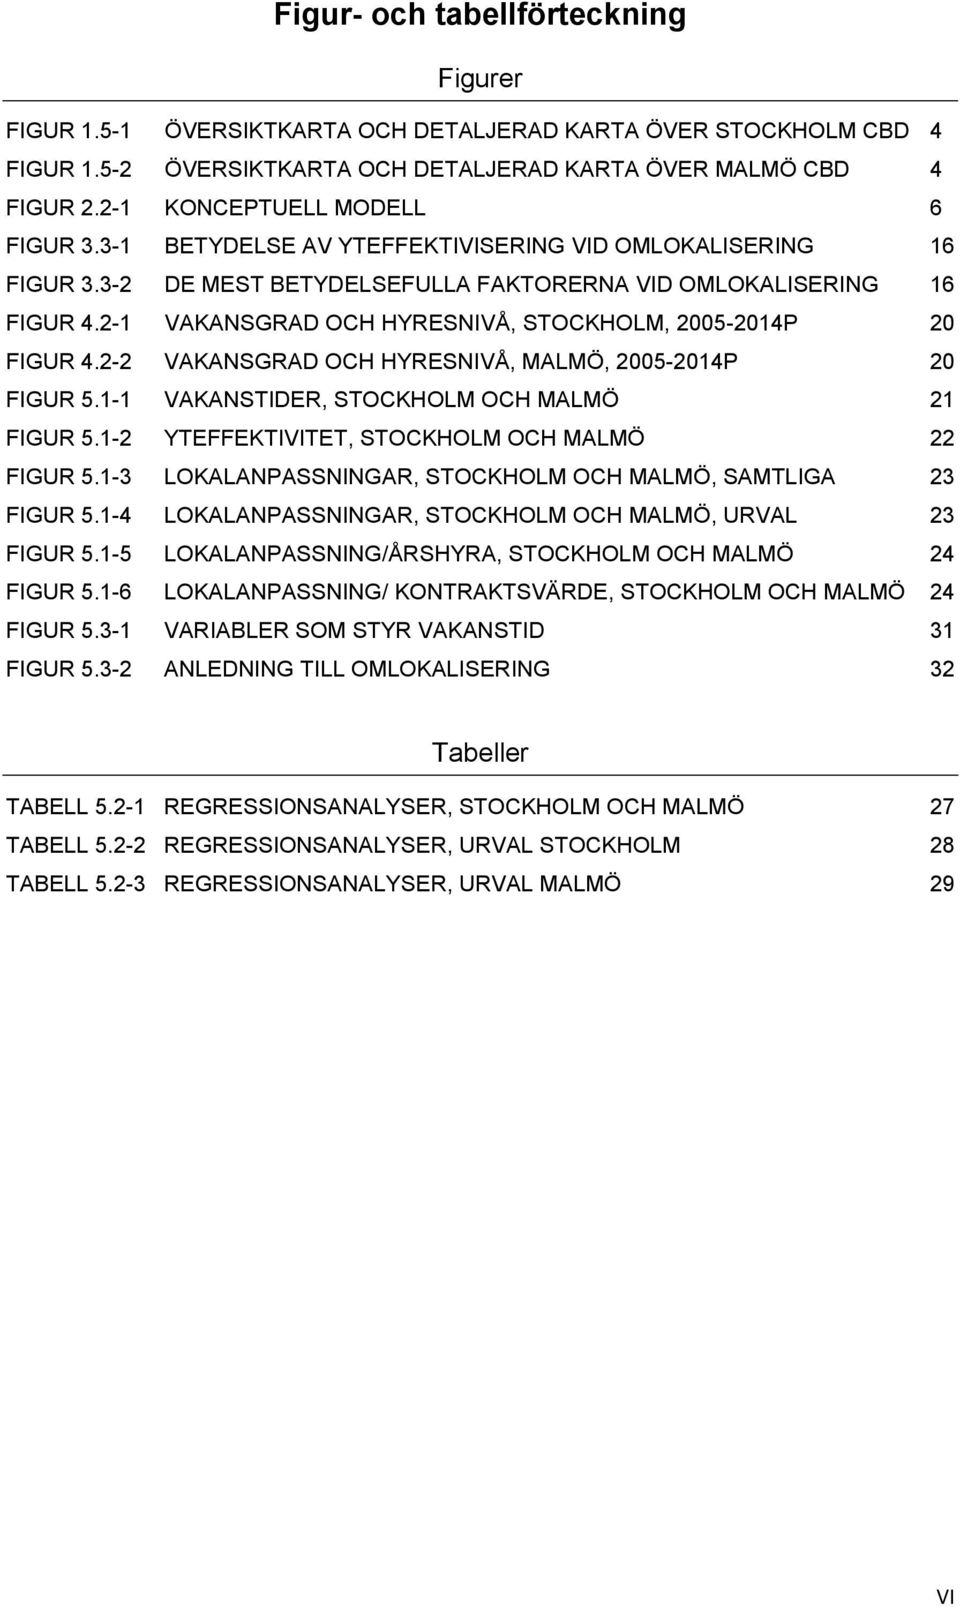 2-1 VAKANSGRAD OCH HYRESNIVÅ, STOCKHOLM, 2005-2014P 20 FIGUR 4.2-2 VAKANSGRAD OCH HYRESNIVÅ, MALMÖ, 2005-2014P 20 FIGUR 5.1-1 VAKANSTIDER, STOCKHOLM OCH MALMÖ 21 FIGUR 5.